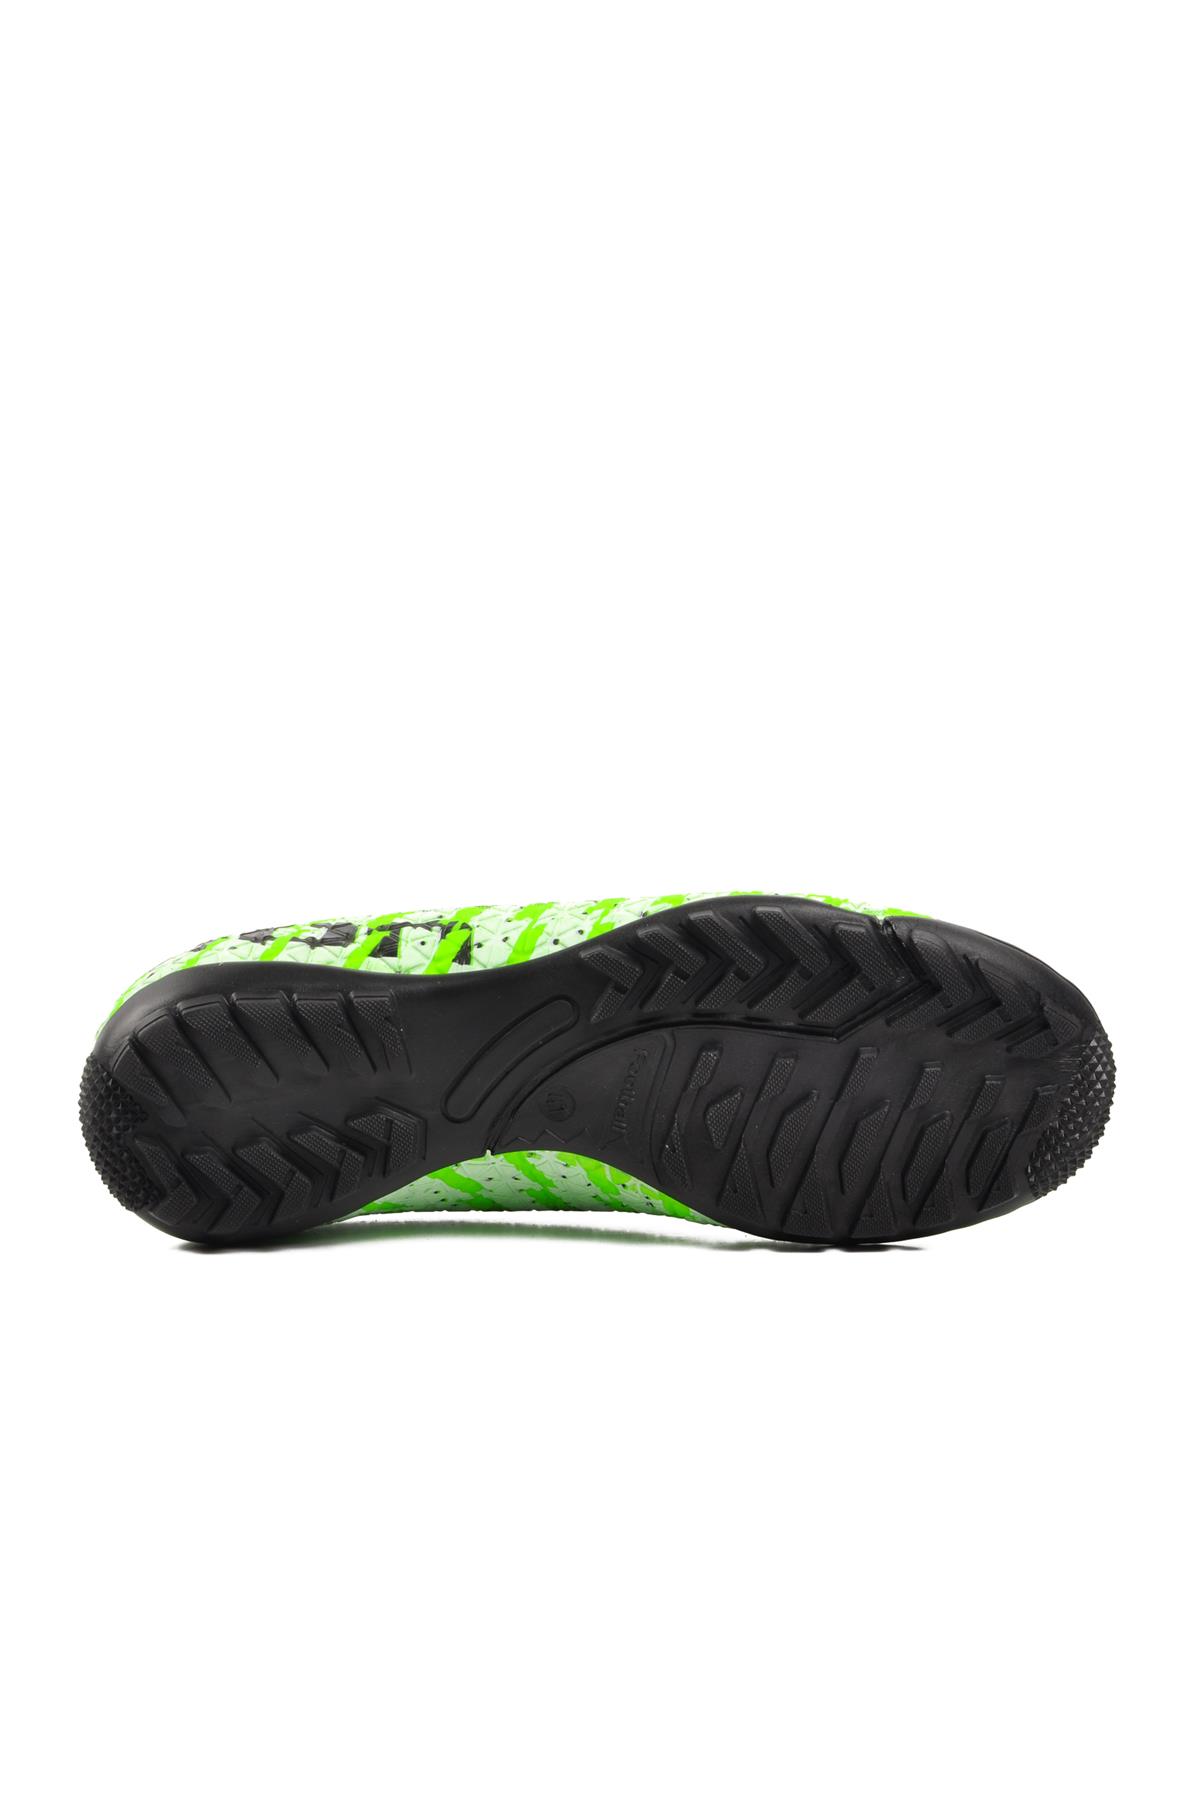 Ayakmod 1453 Yeşil-Siyah Erkek Halı Saha Ayakkabısı Ayakmod Erkek Halı Saha Ayakkabısı